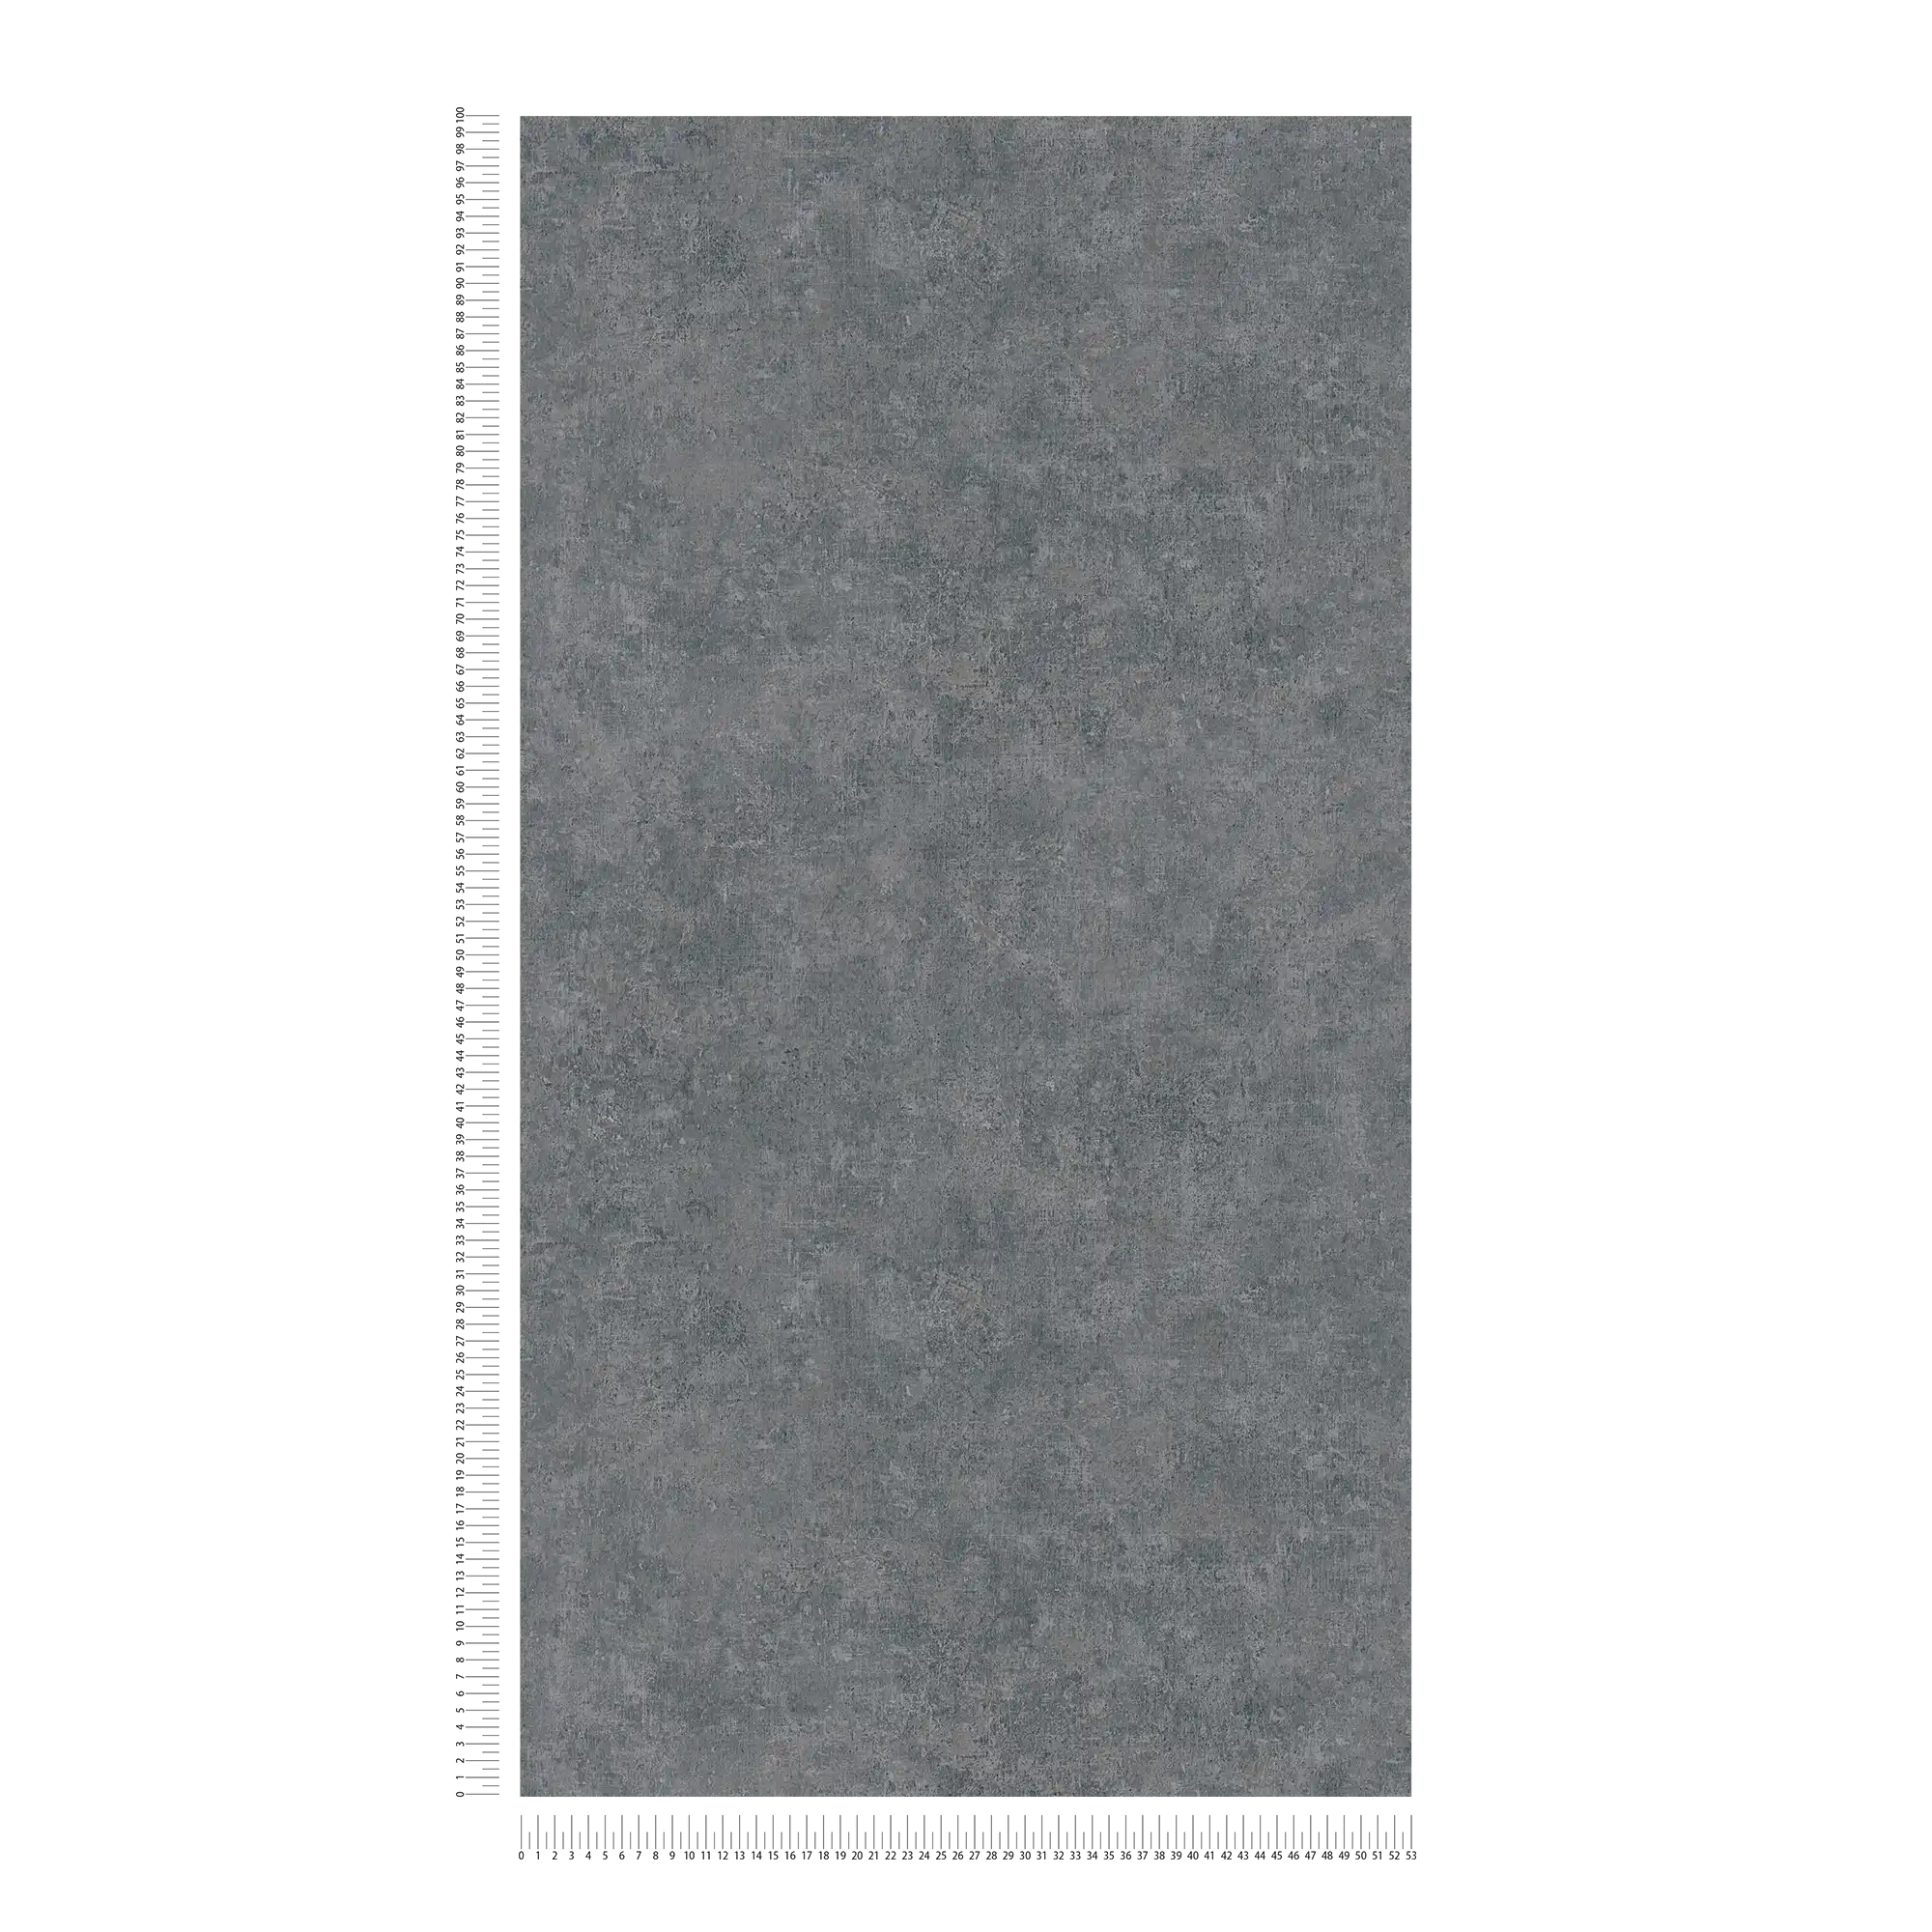             Vliesbehang met ton sur ton patroon, used look - grijs
        